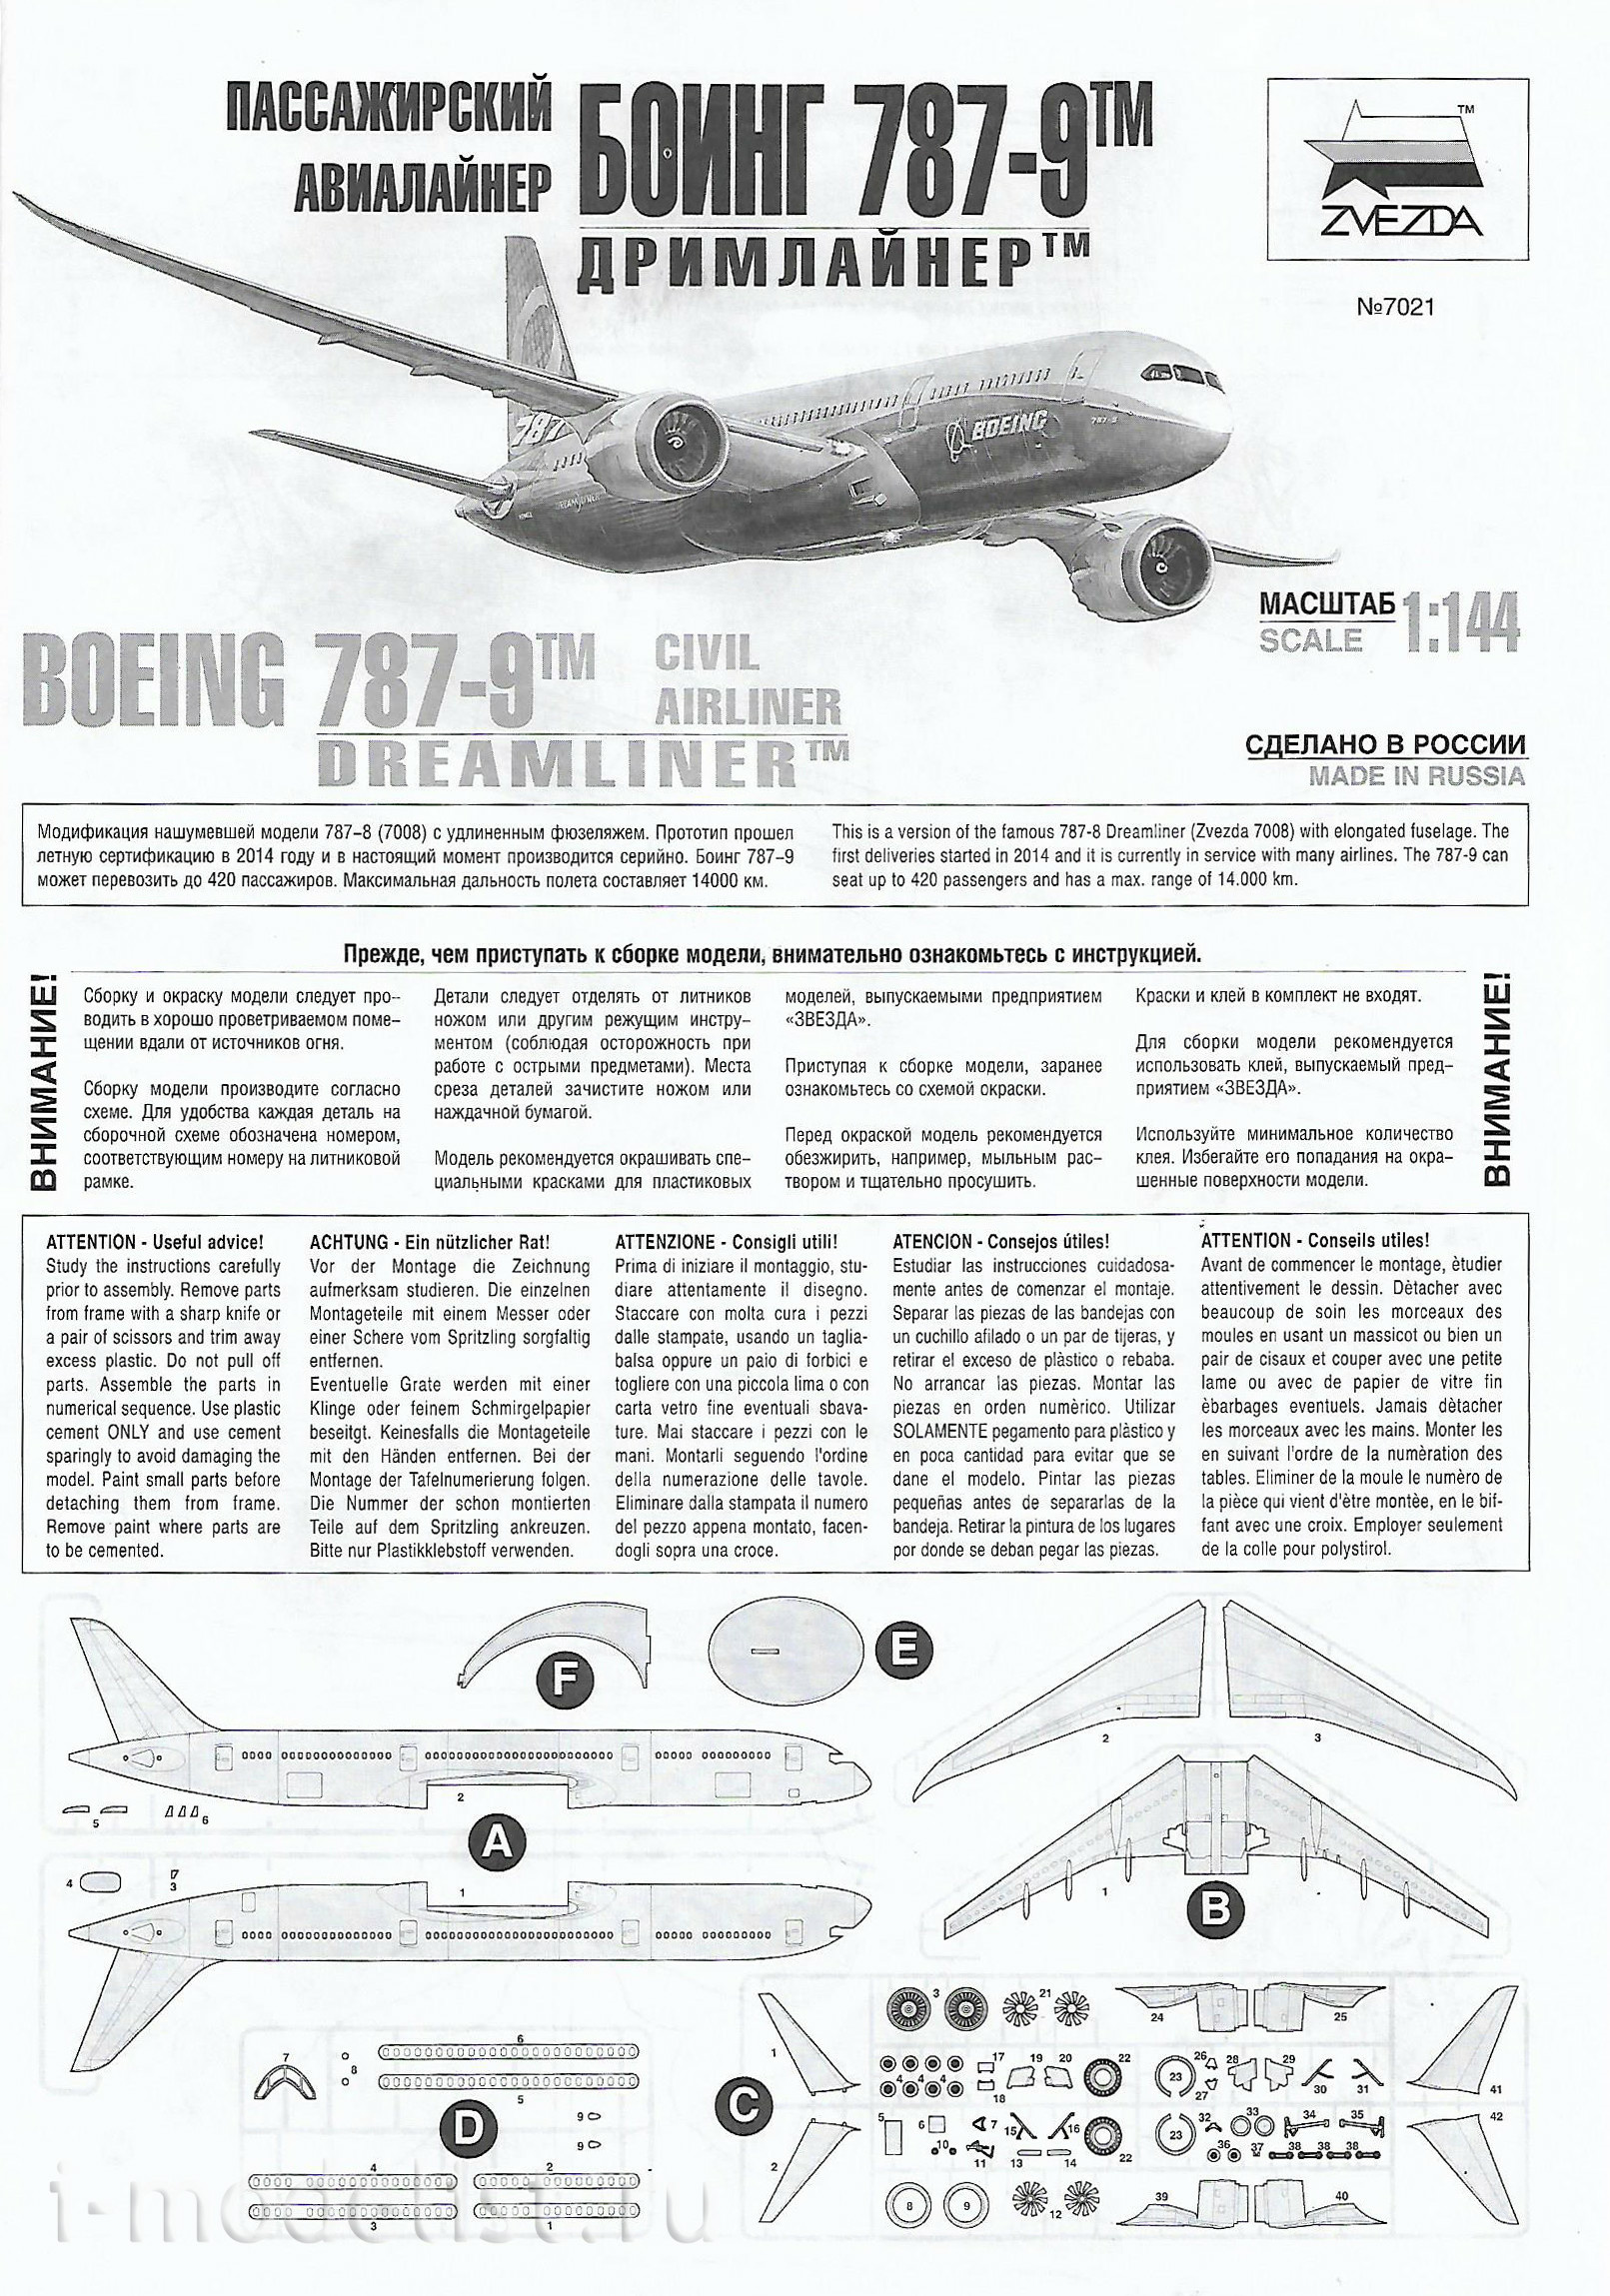 7021 Zvezda 1/144 Passenger airliner Boeing 787-9 